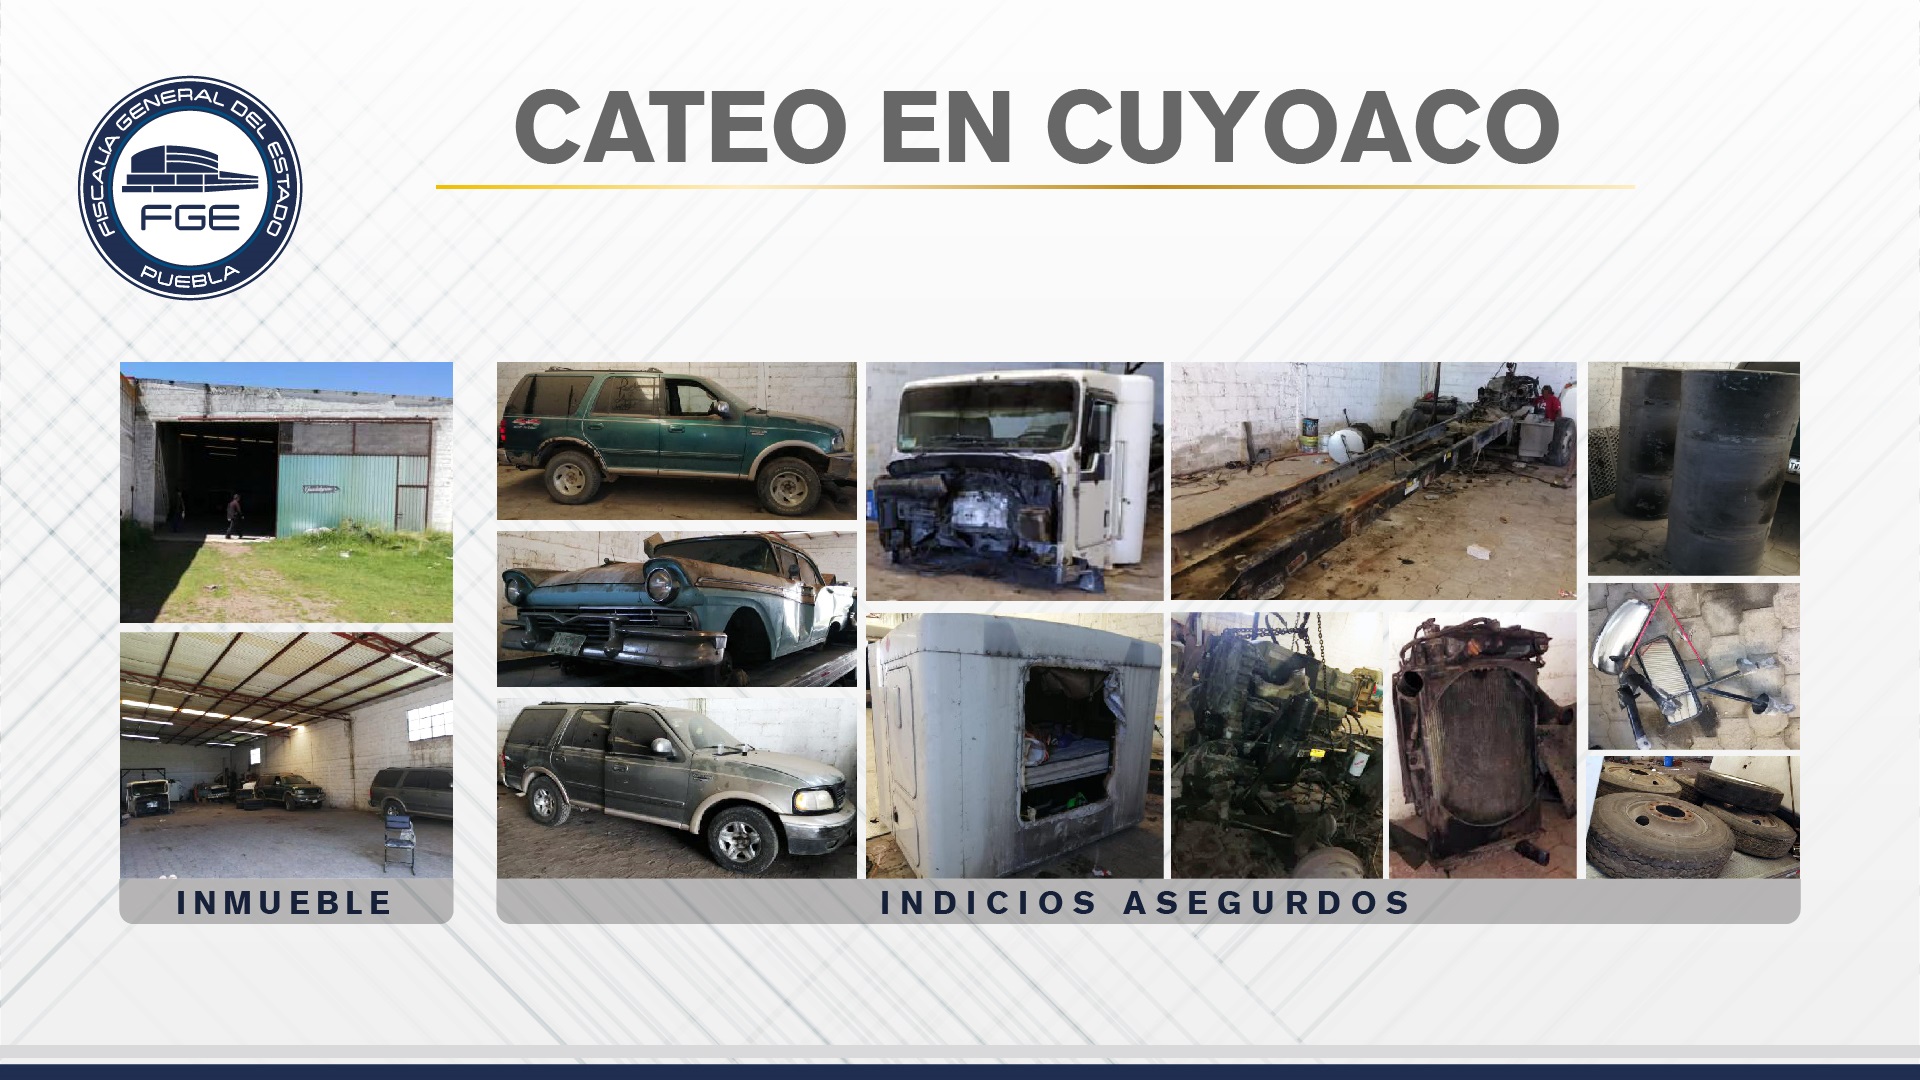 FGE aseguró en Cuyoaco inmueble con unidades y autopartes